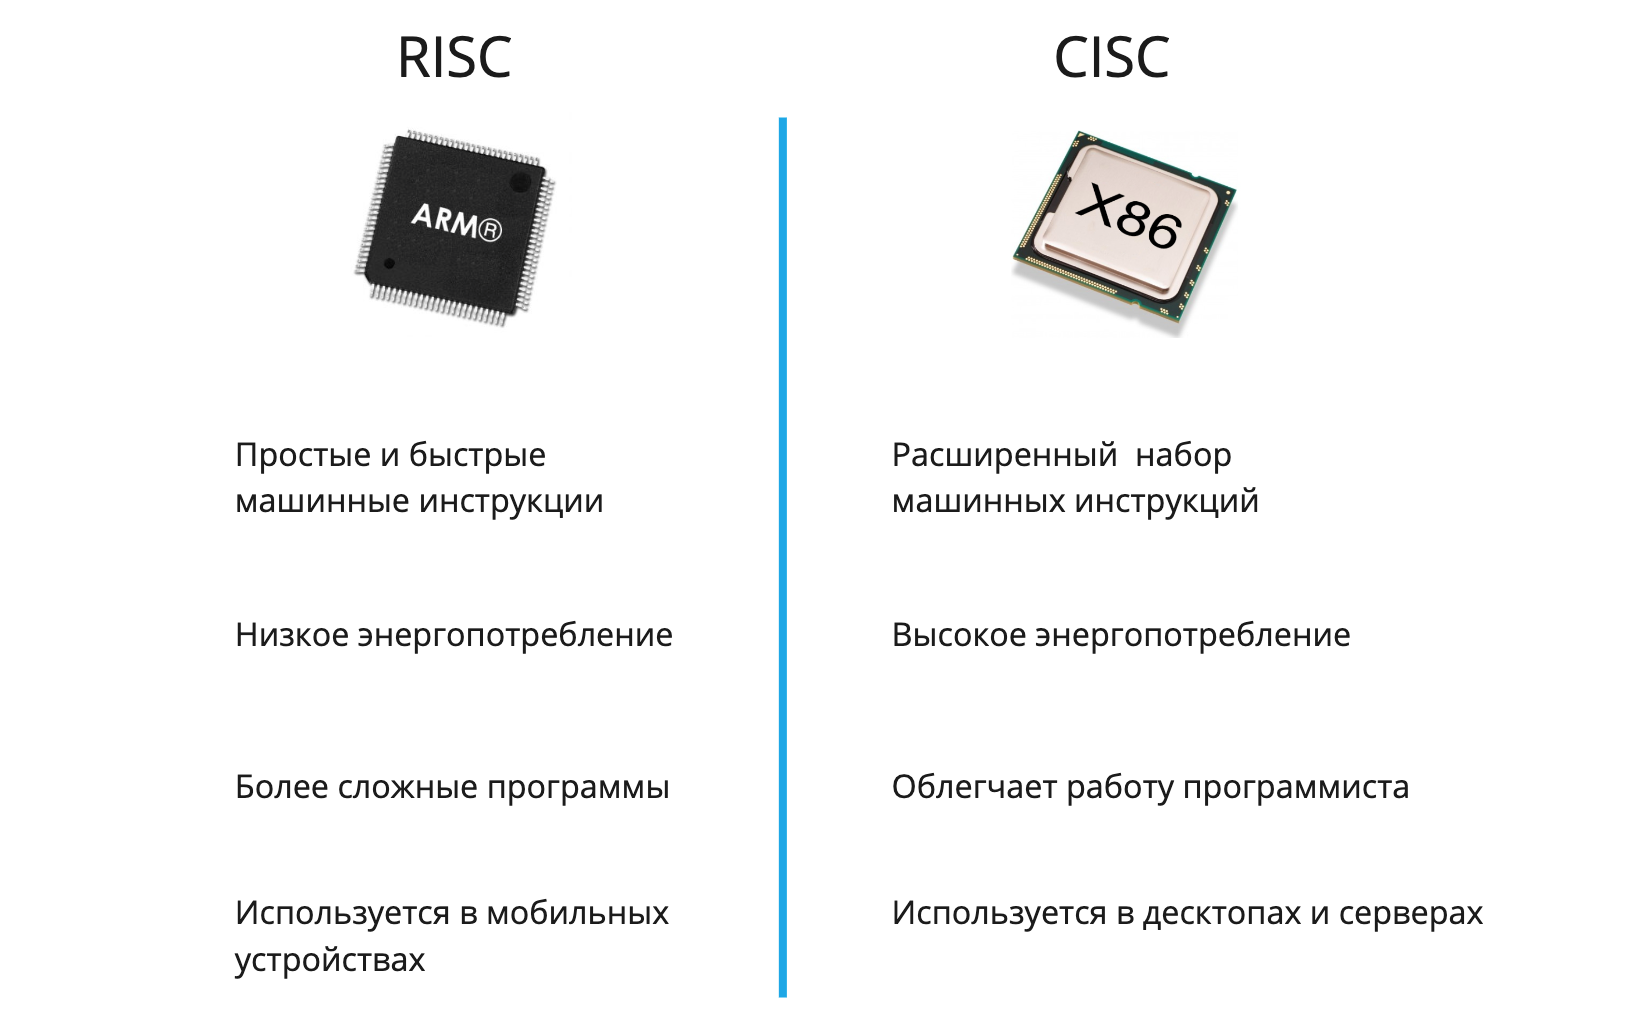 Архитектура процессоров RISC И CISC. Архитектуры микропроцессоров CISC, RISC, misc. Архитектуры процессоров RISC CISC Arm. RISC CISC архитектура различия. Arm 64 что это